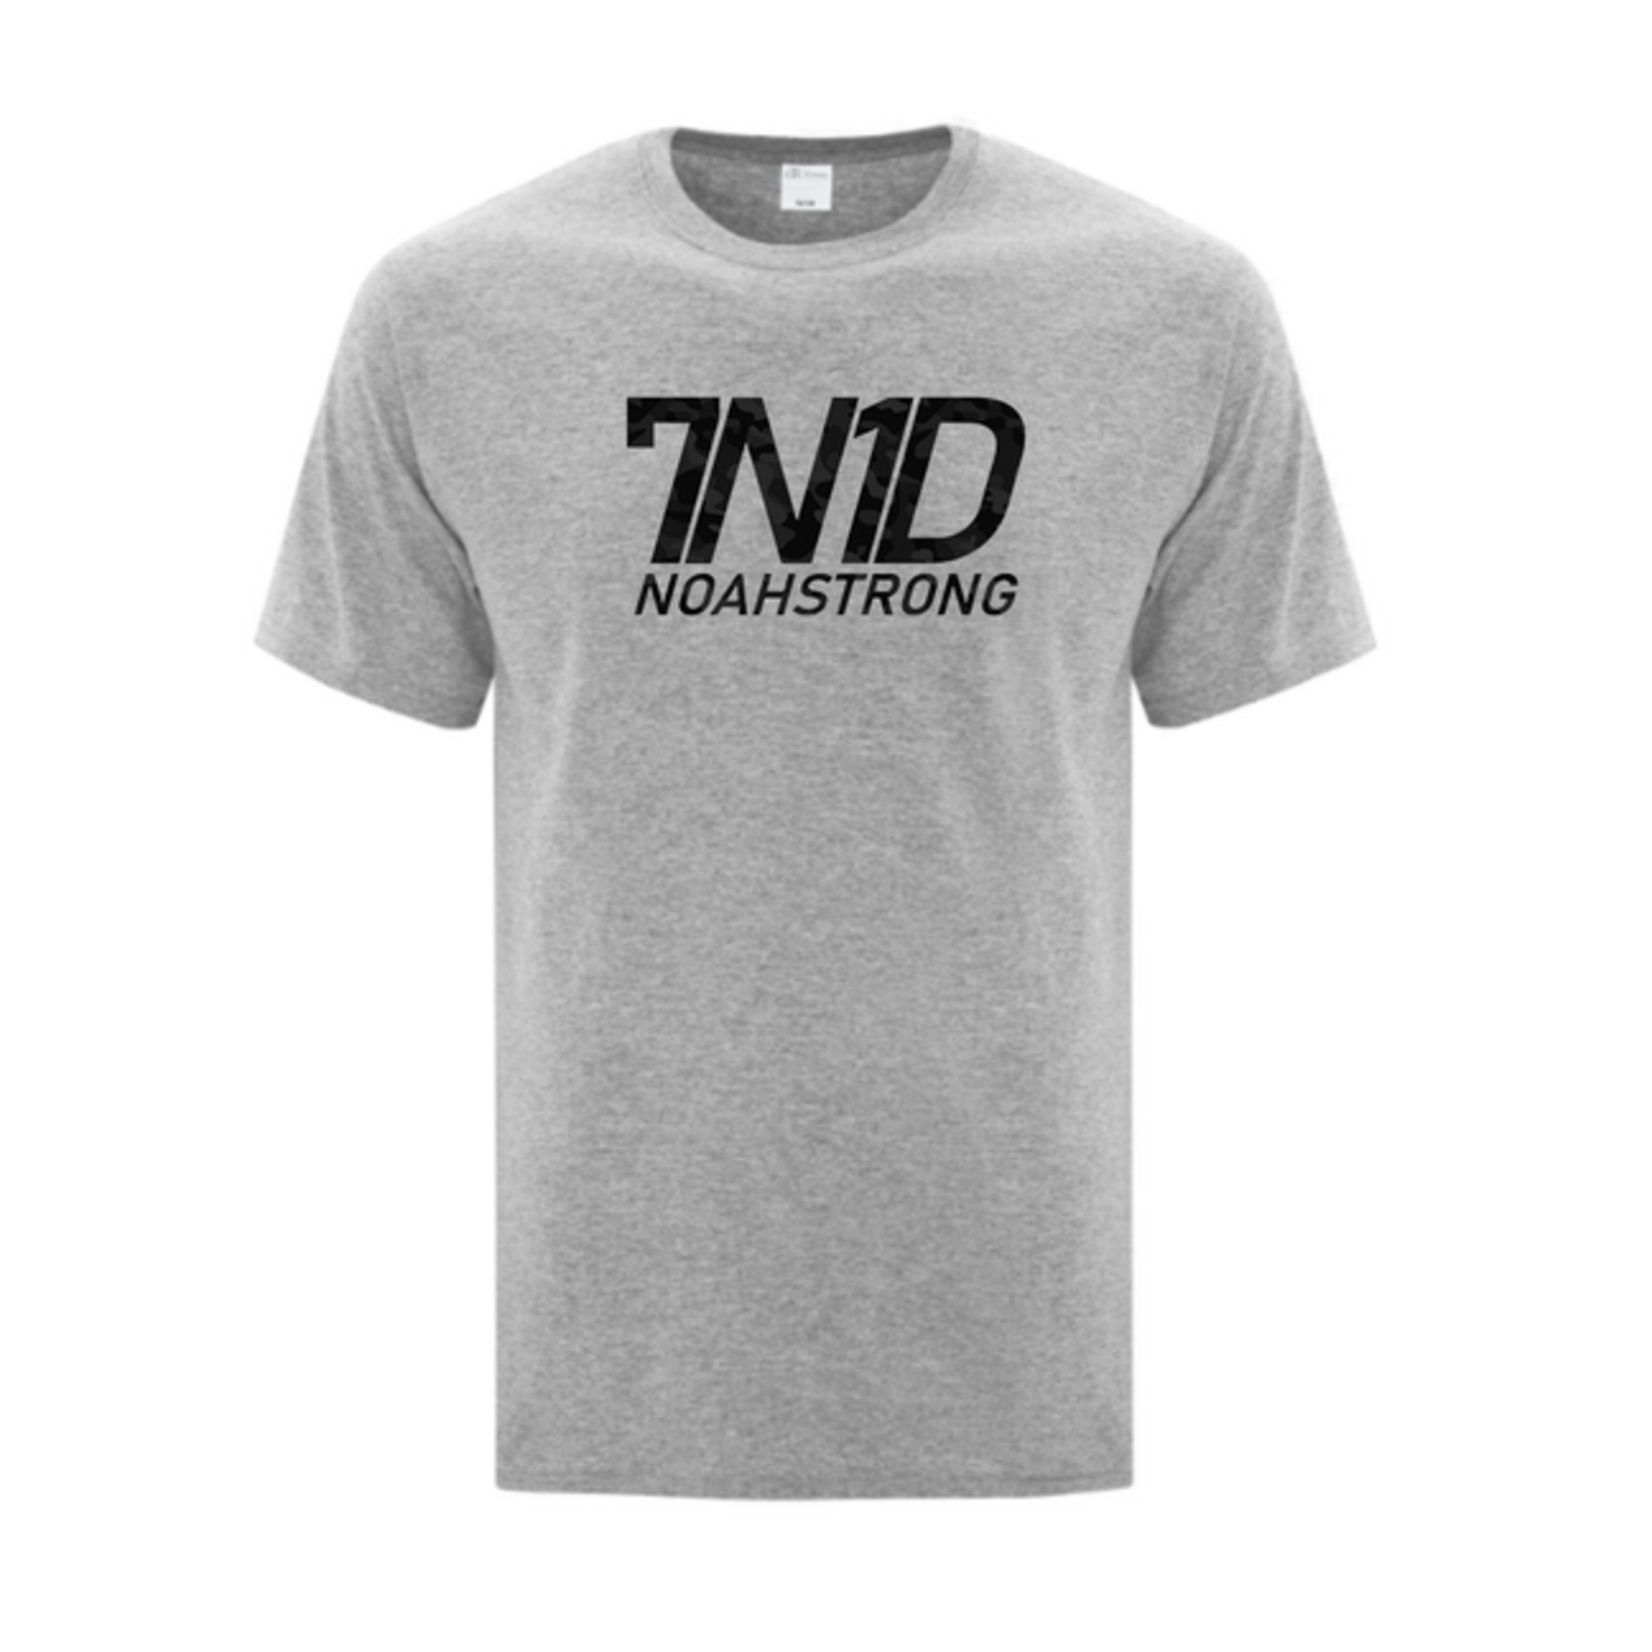 Noahstrong CAMO 7N1D T-Shirt